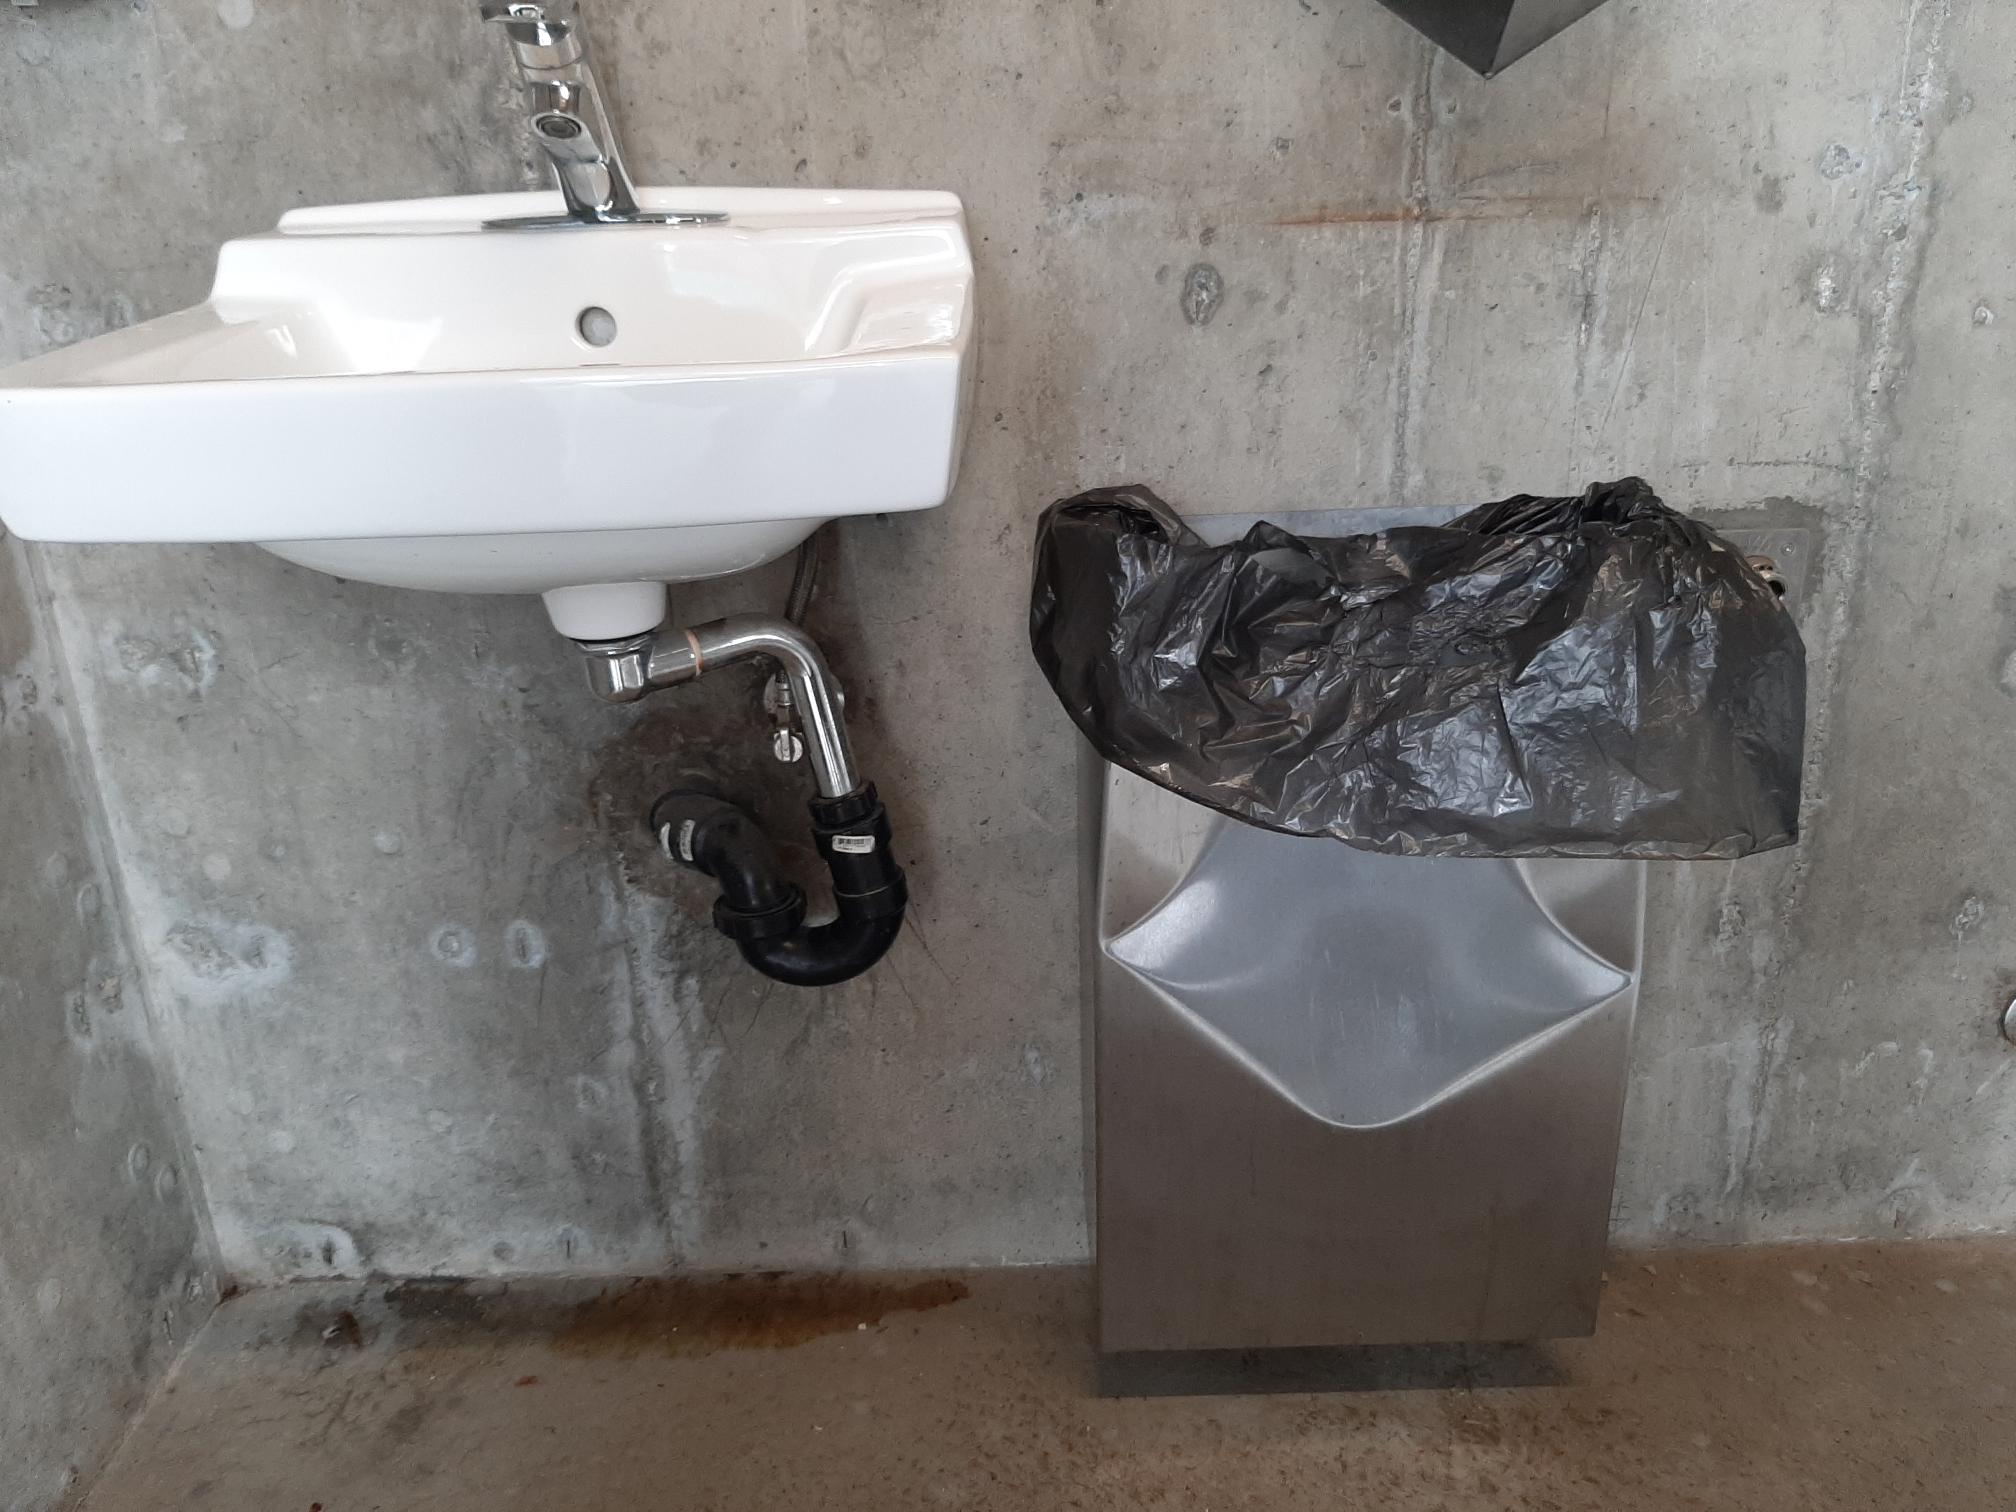 Public washrooms at Naramata park closed due to vandalism